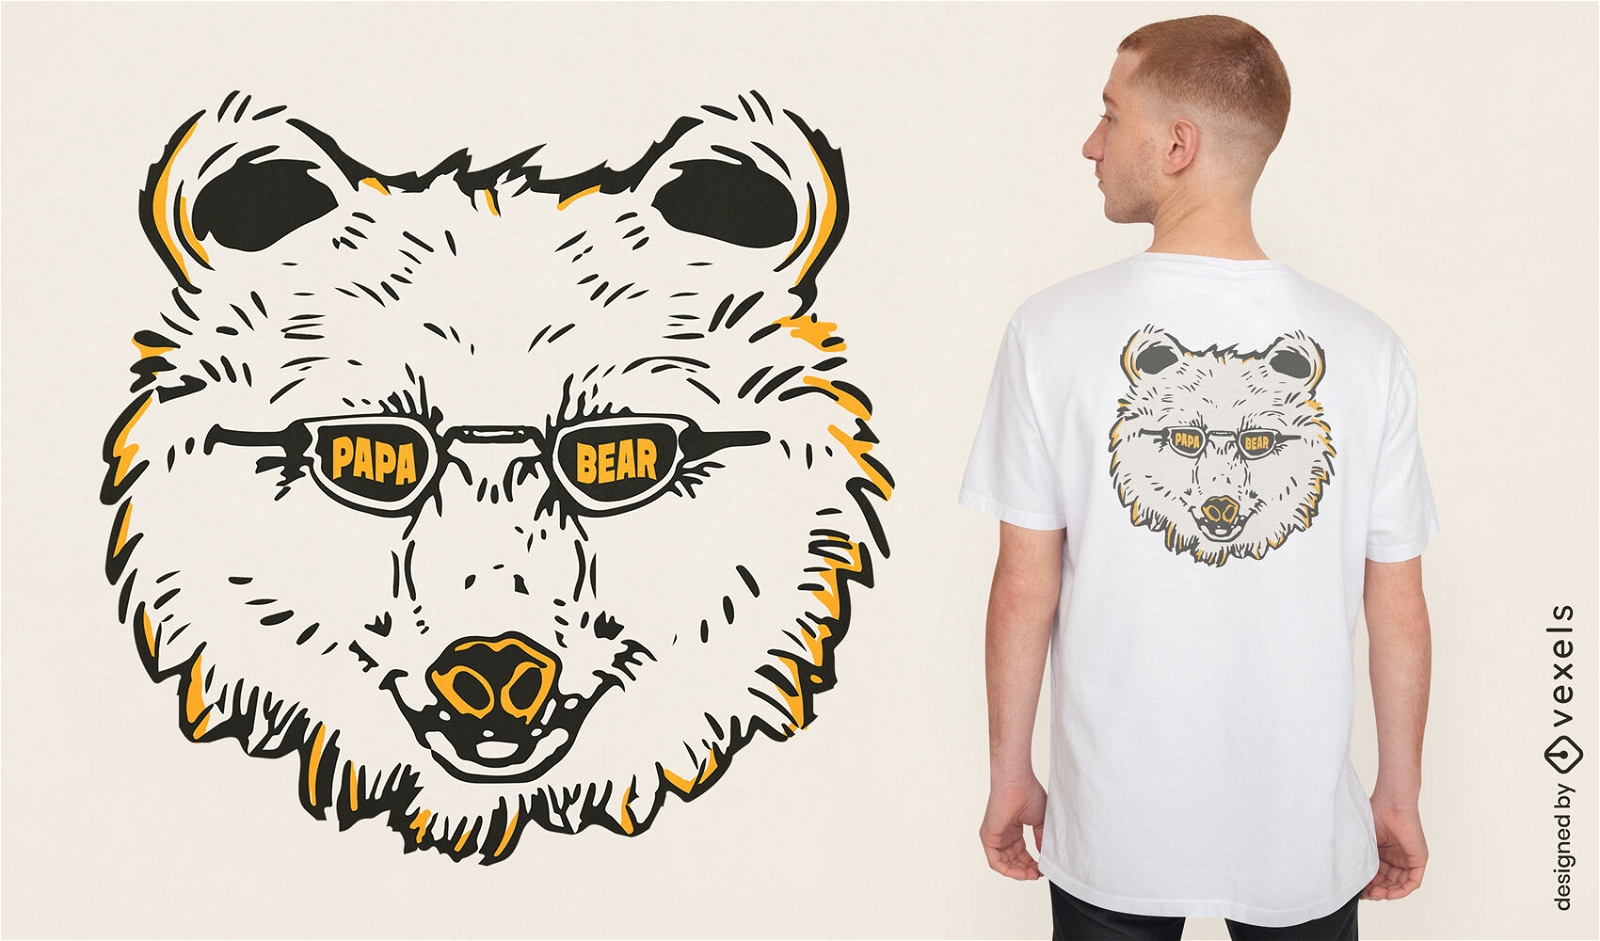 Cooles Papab?r-T-Shirt-Design mit Sonnenbrille